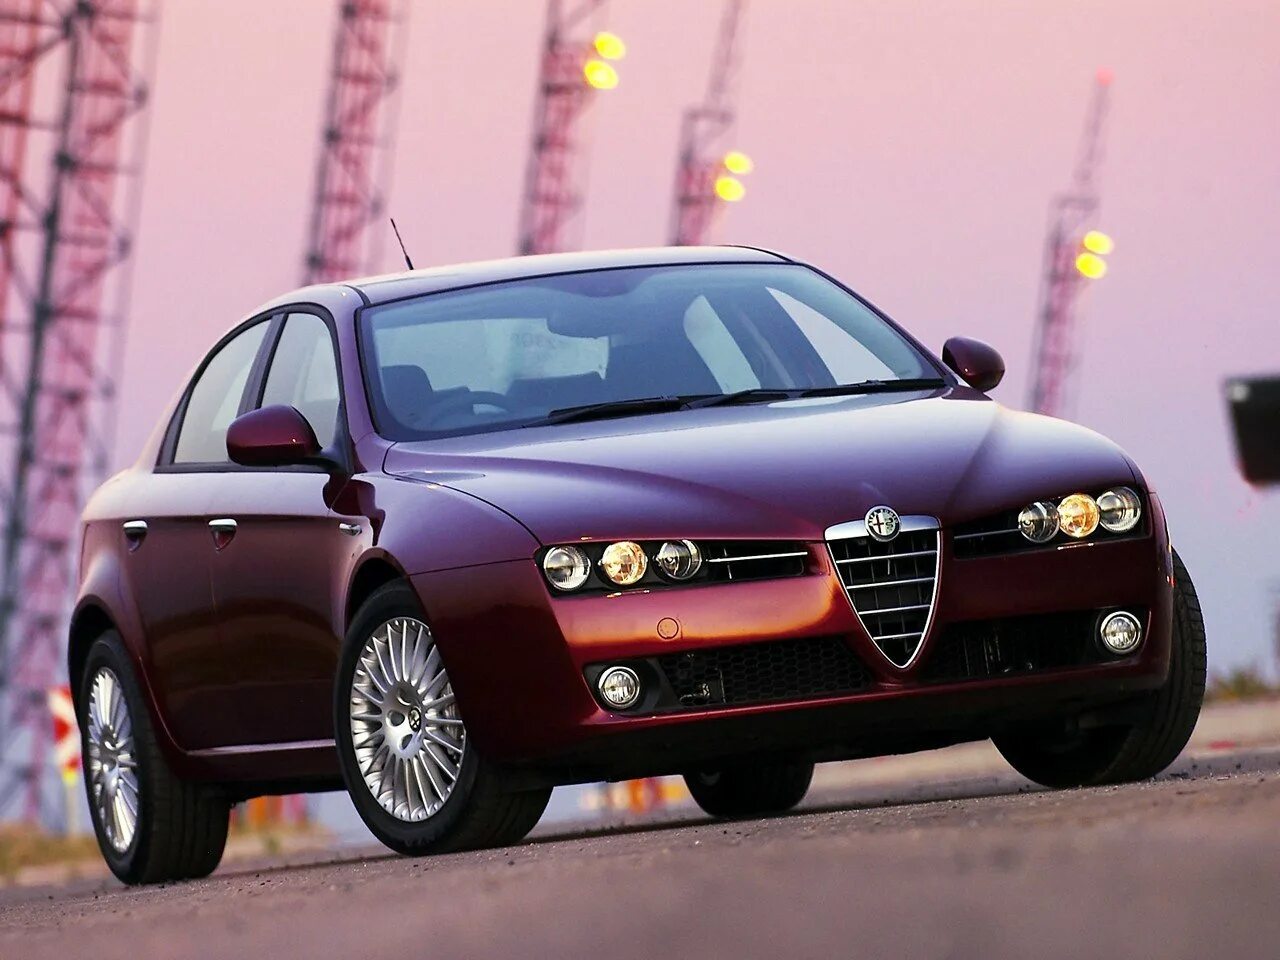 Альфа ромео авито. Alfa Romeo. Alfa Romeo 159 3.2. Автомобиль Альфа Ромео 159. Alfa Romeo 159, 3.2 JTS.